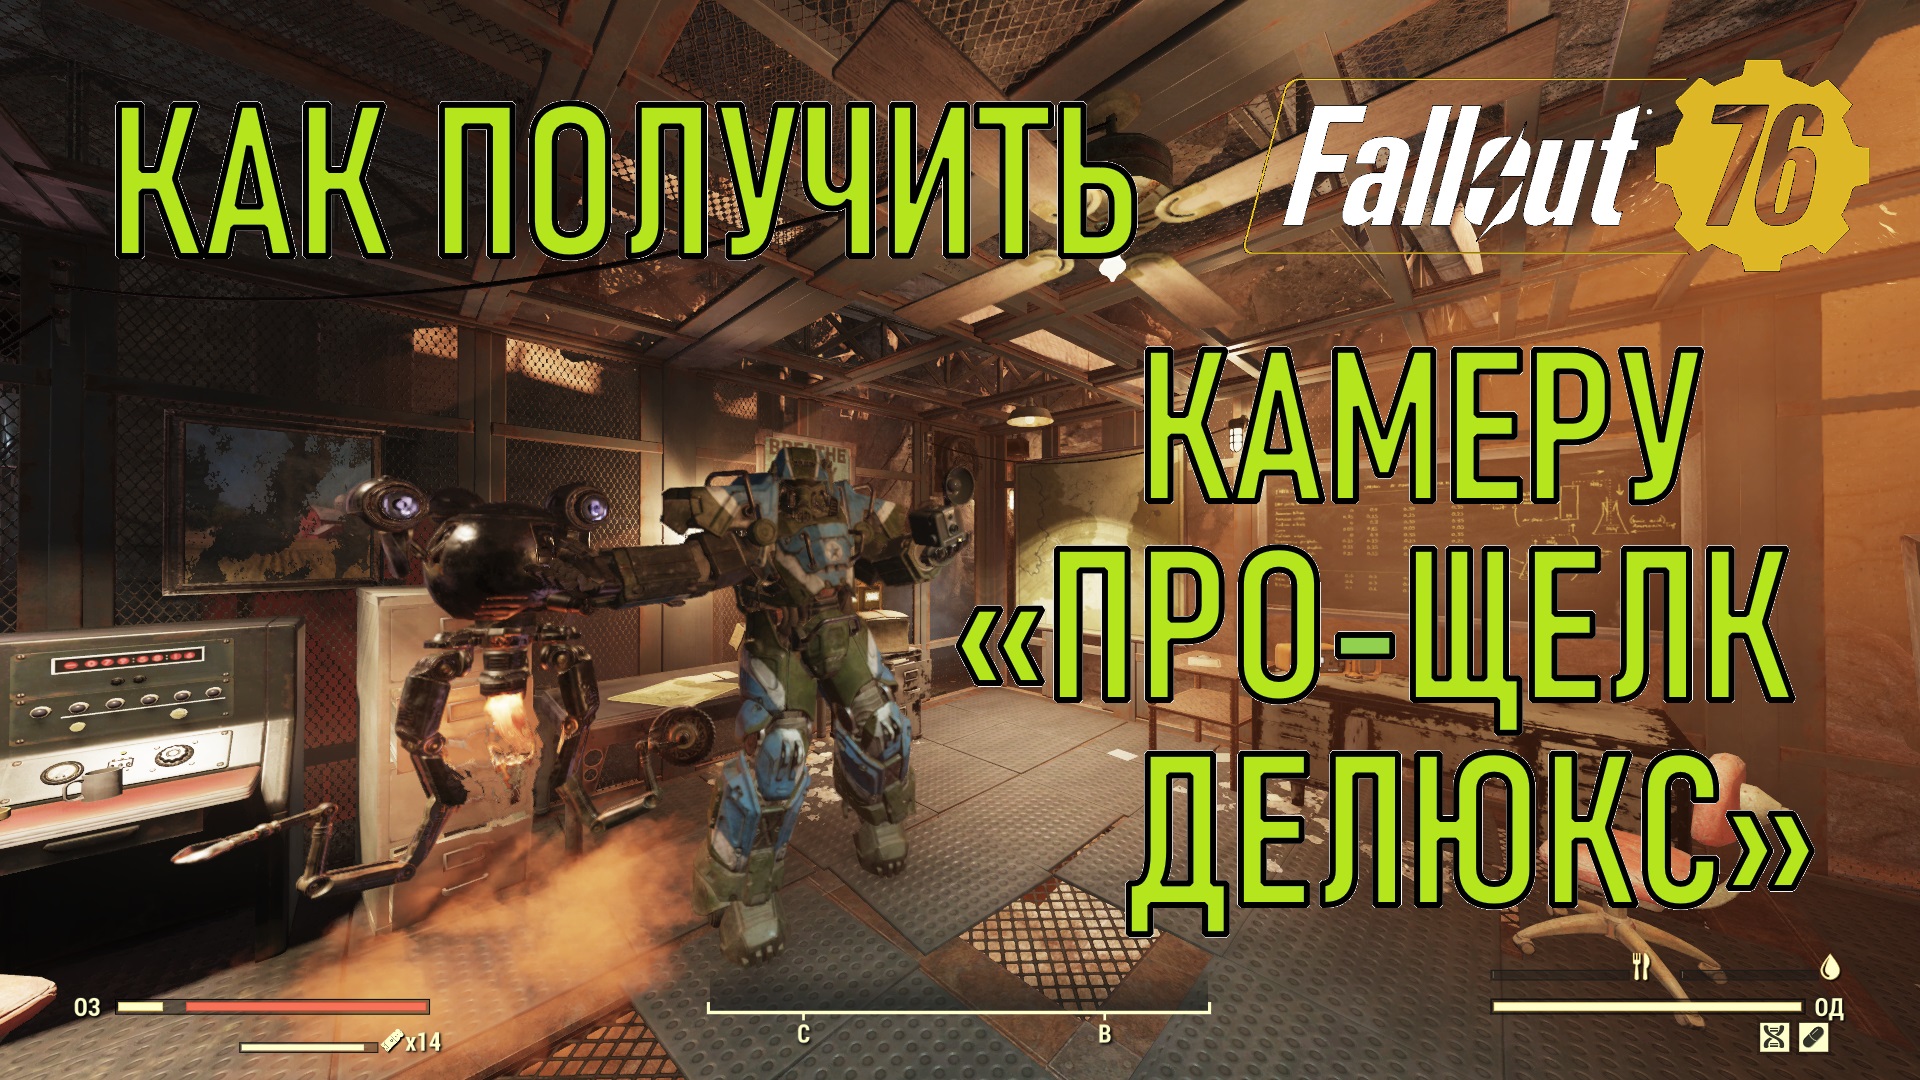 Fallout 76 Как получить камеру Про-щелк делюкс